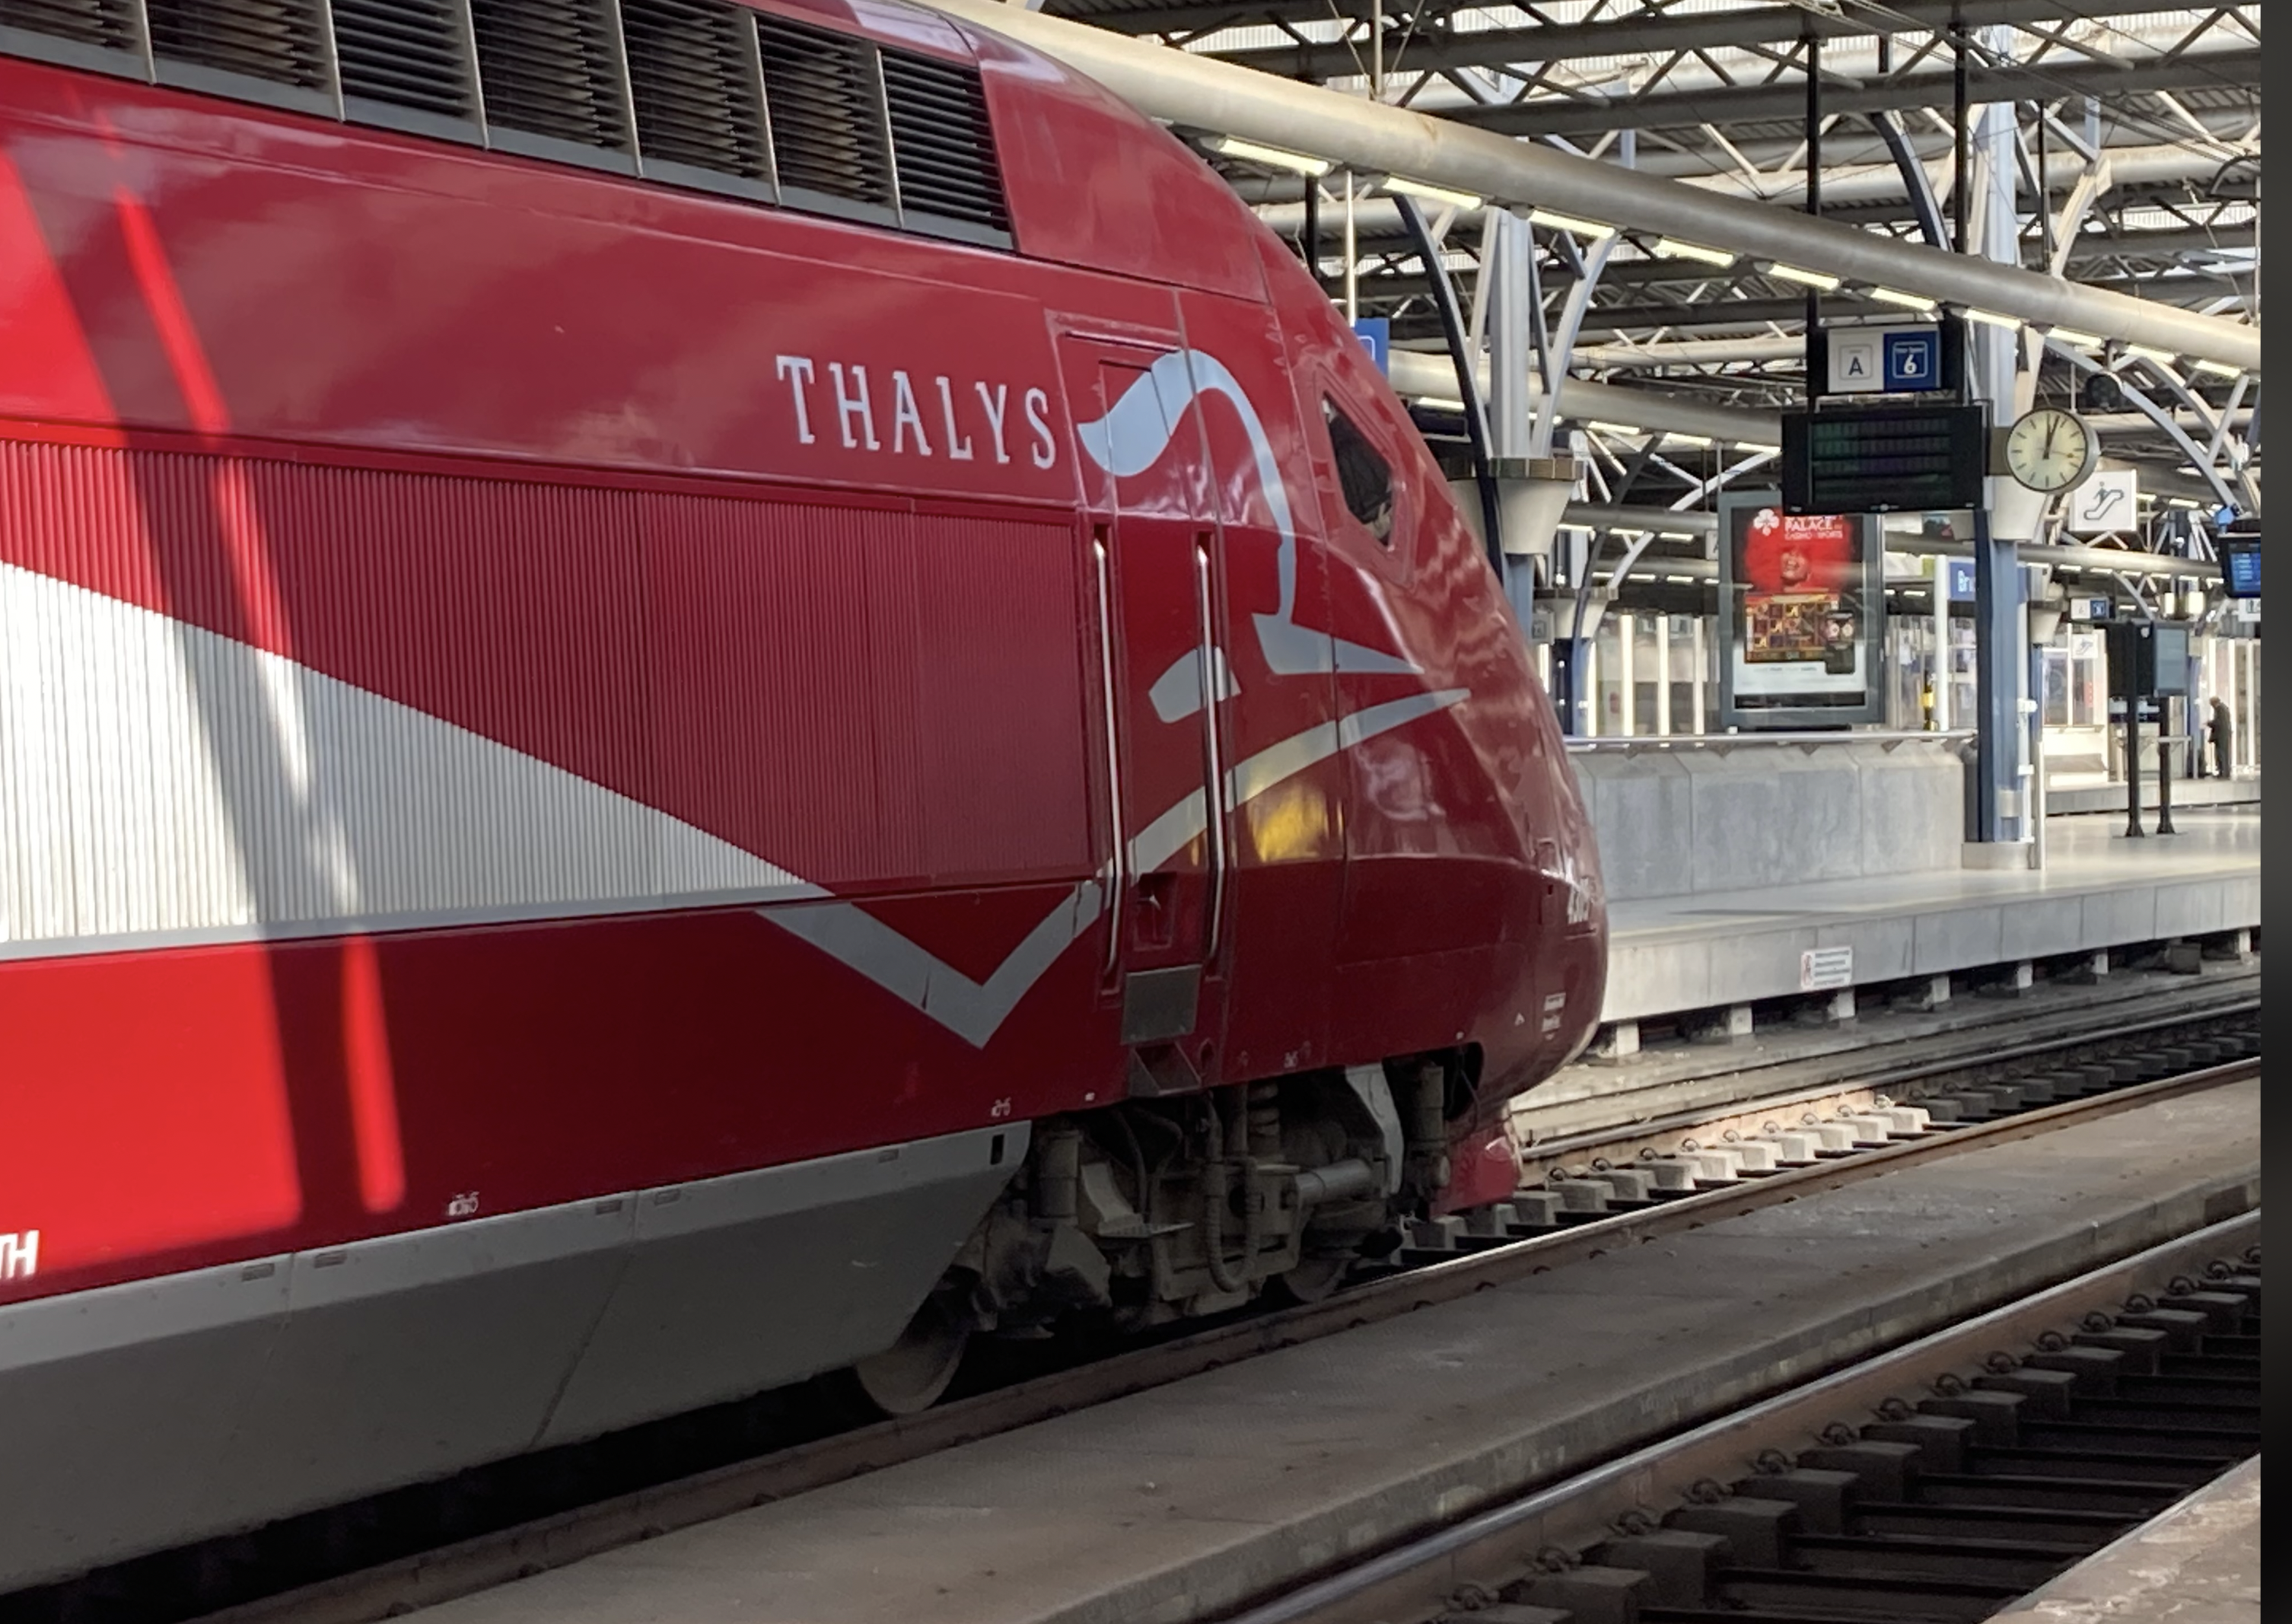 België wil internationaal spoorknooppunt worden voor duurzaam reizen in Europa